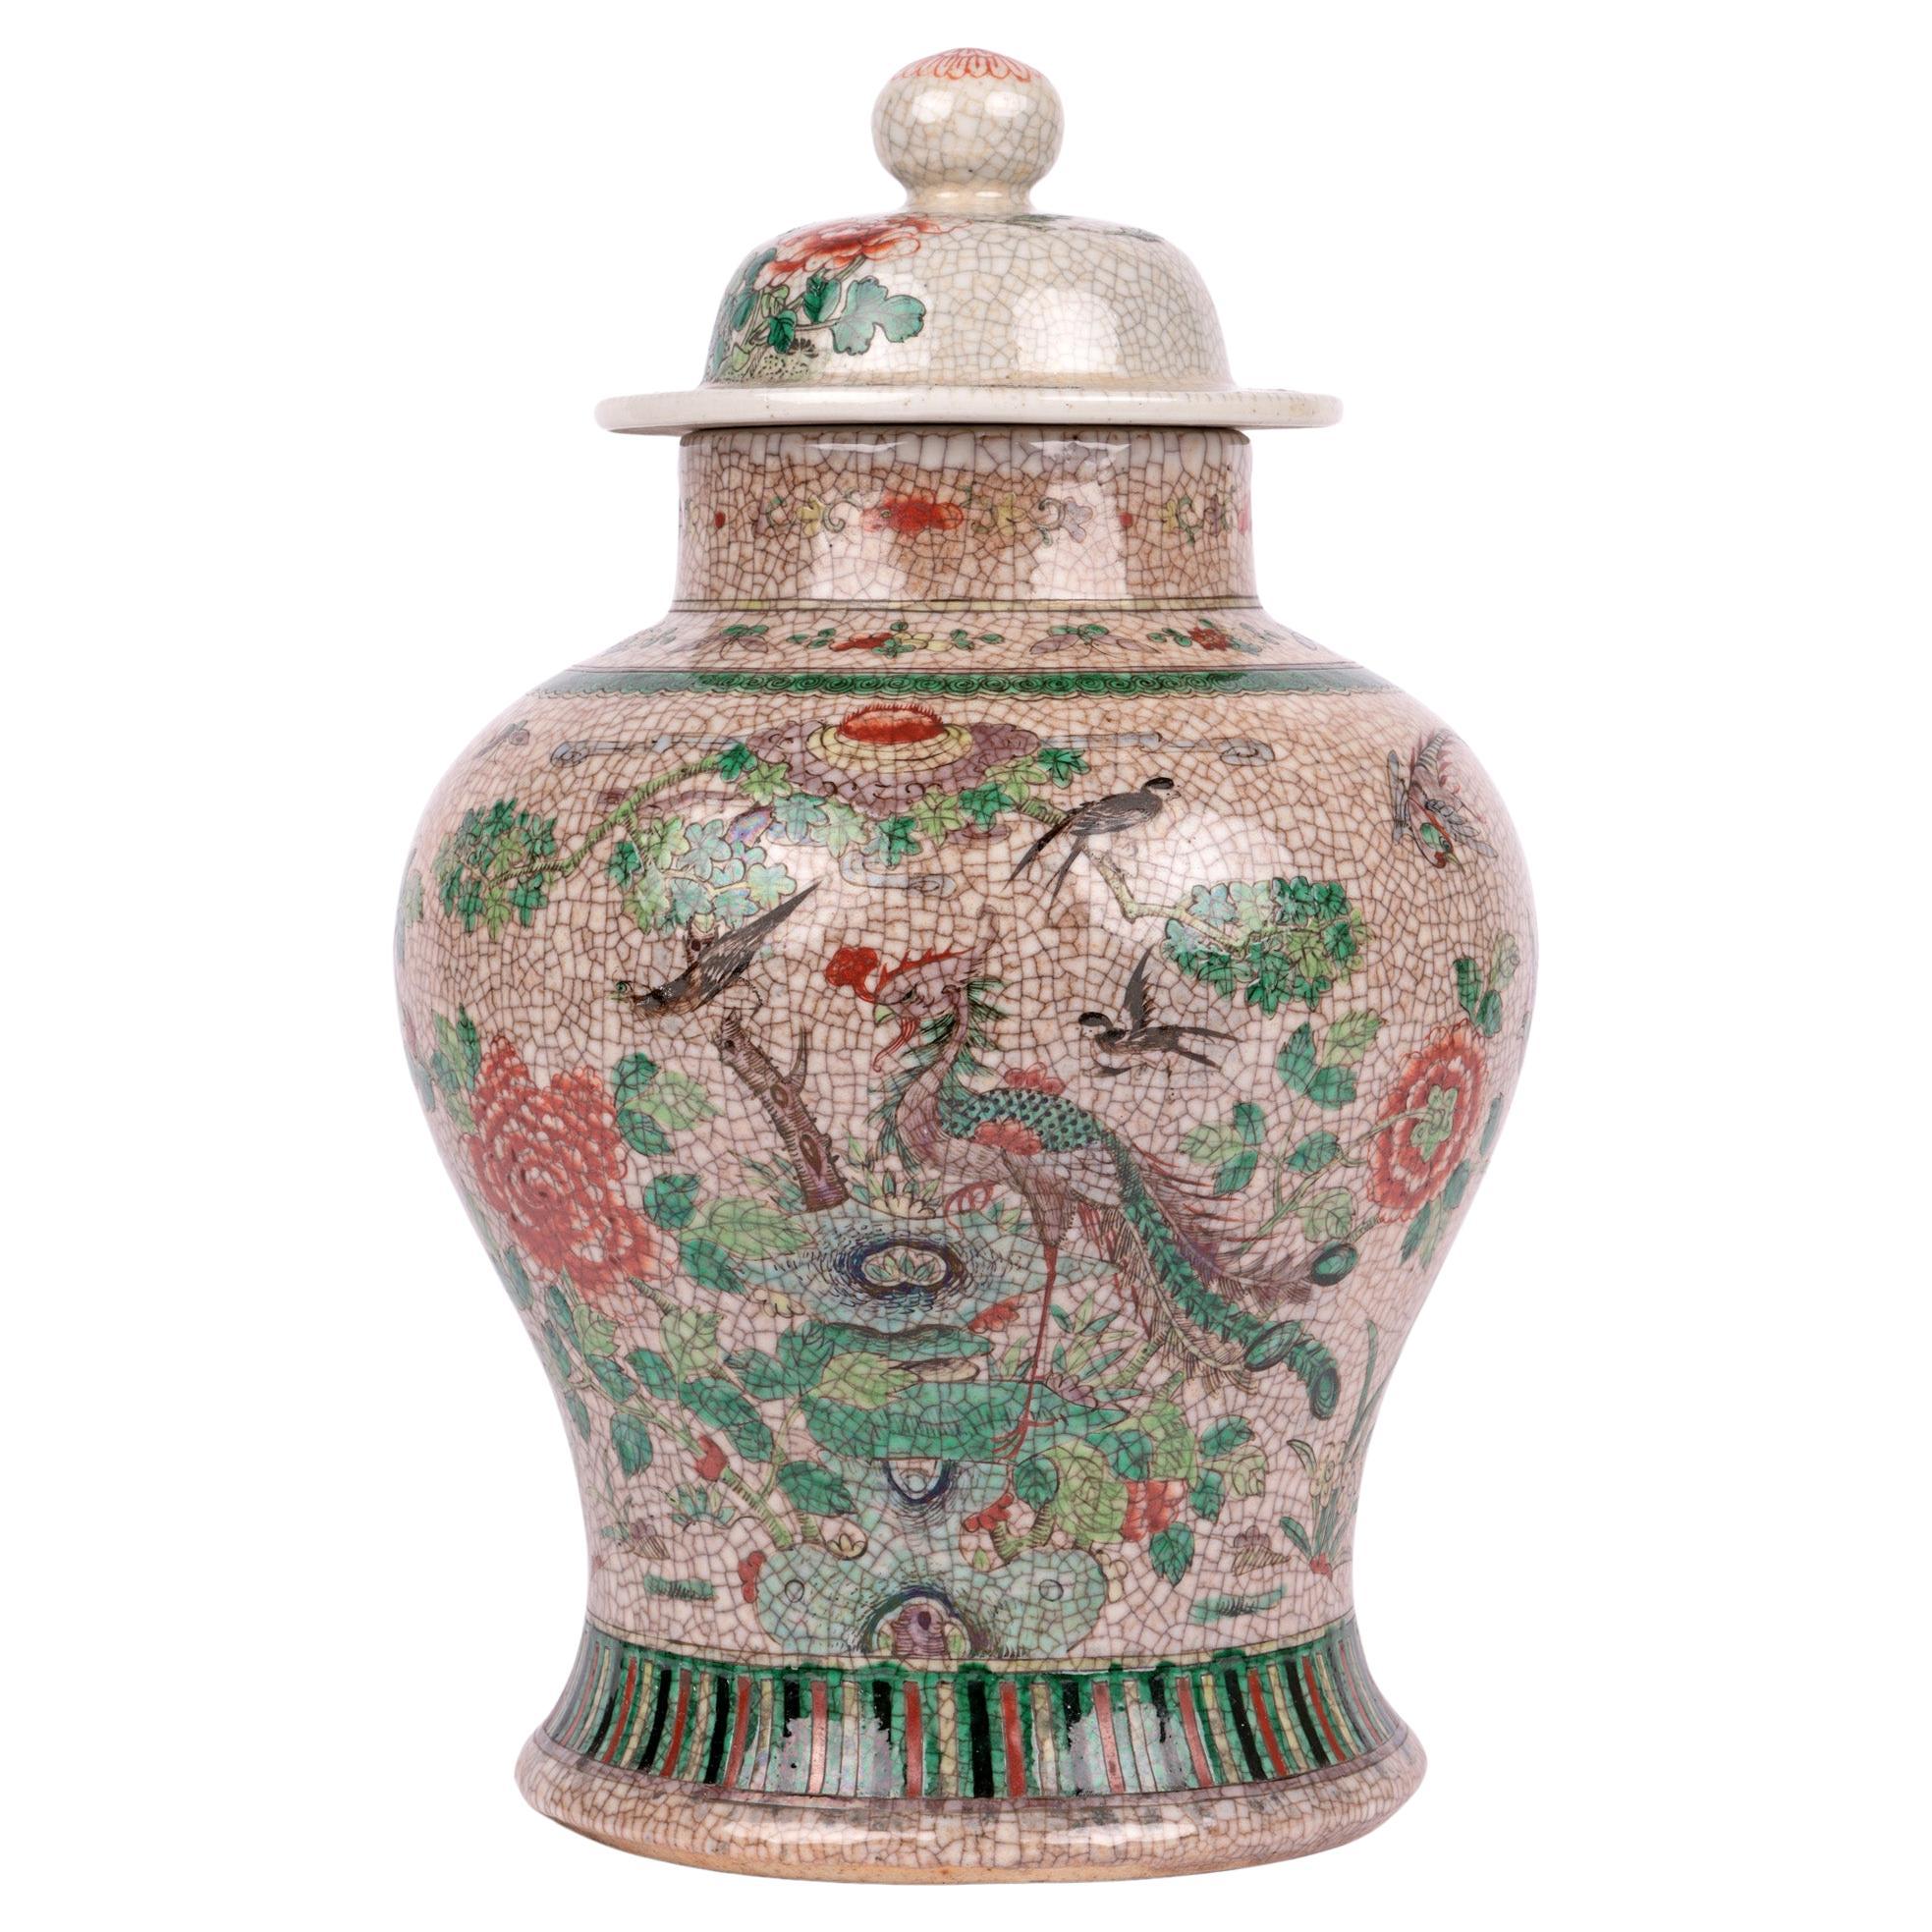 Grand pot à couvercle en porcelaine émaillée avec oiseaux de style craquelé chinois Qing